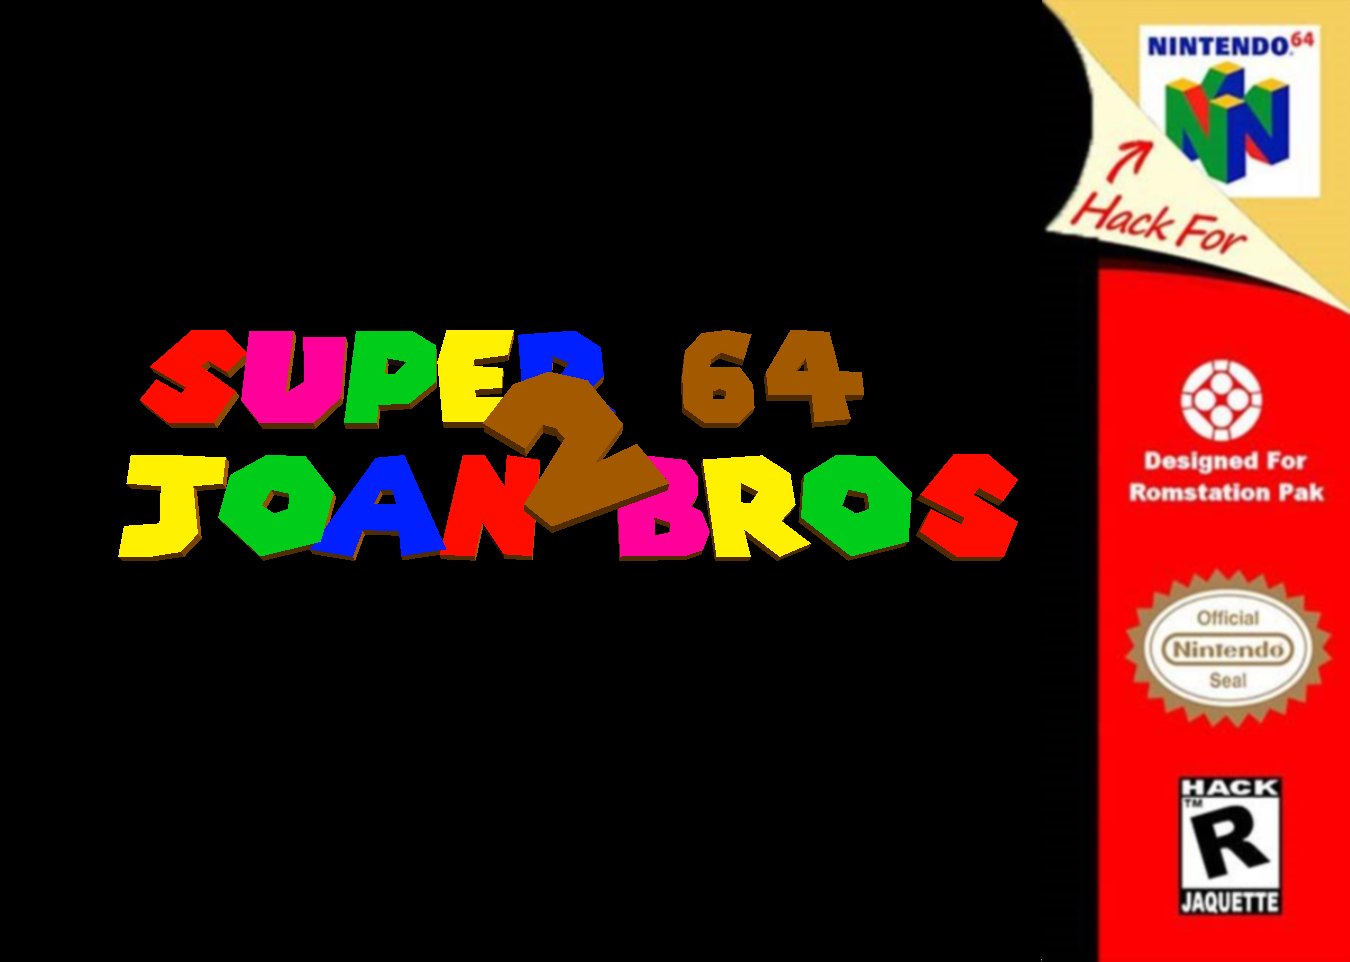 Super Joan Bros 64 2